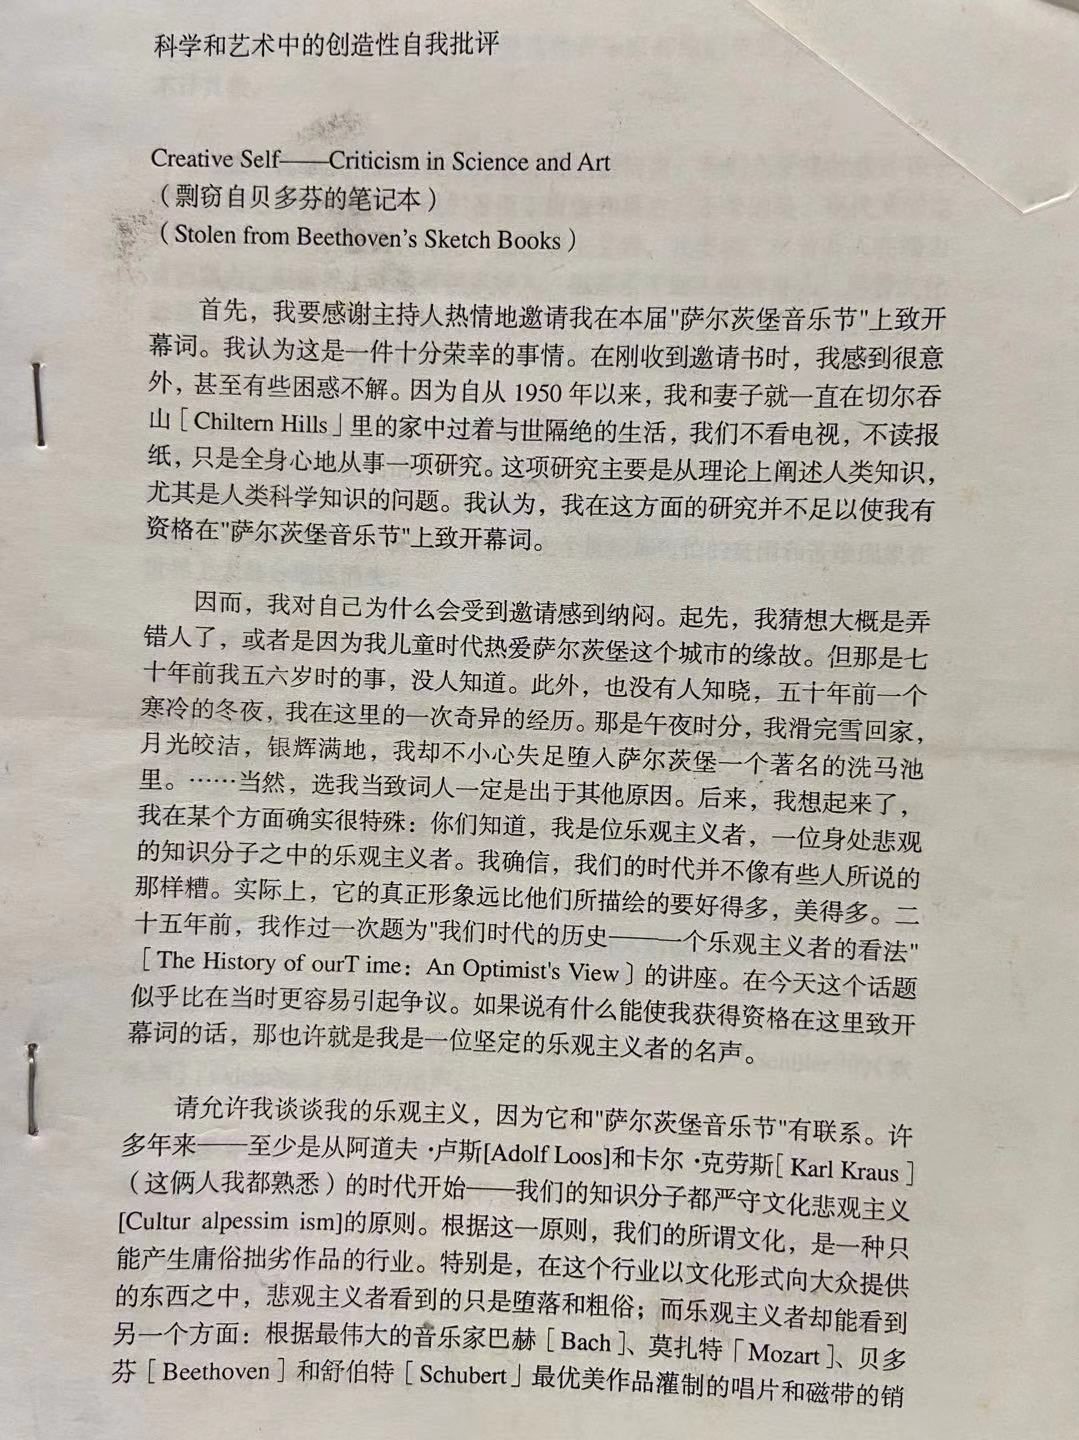 书屋主要支持者吉林体育学院张晓军副教授推荐给科幻世界的一篇翻译，一直没有寄给科幻世界。